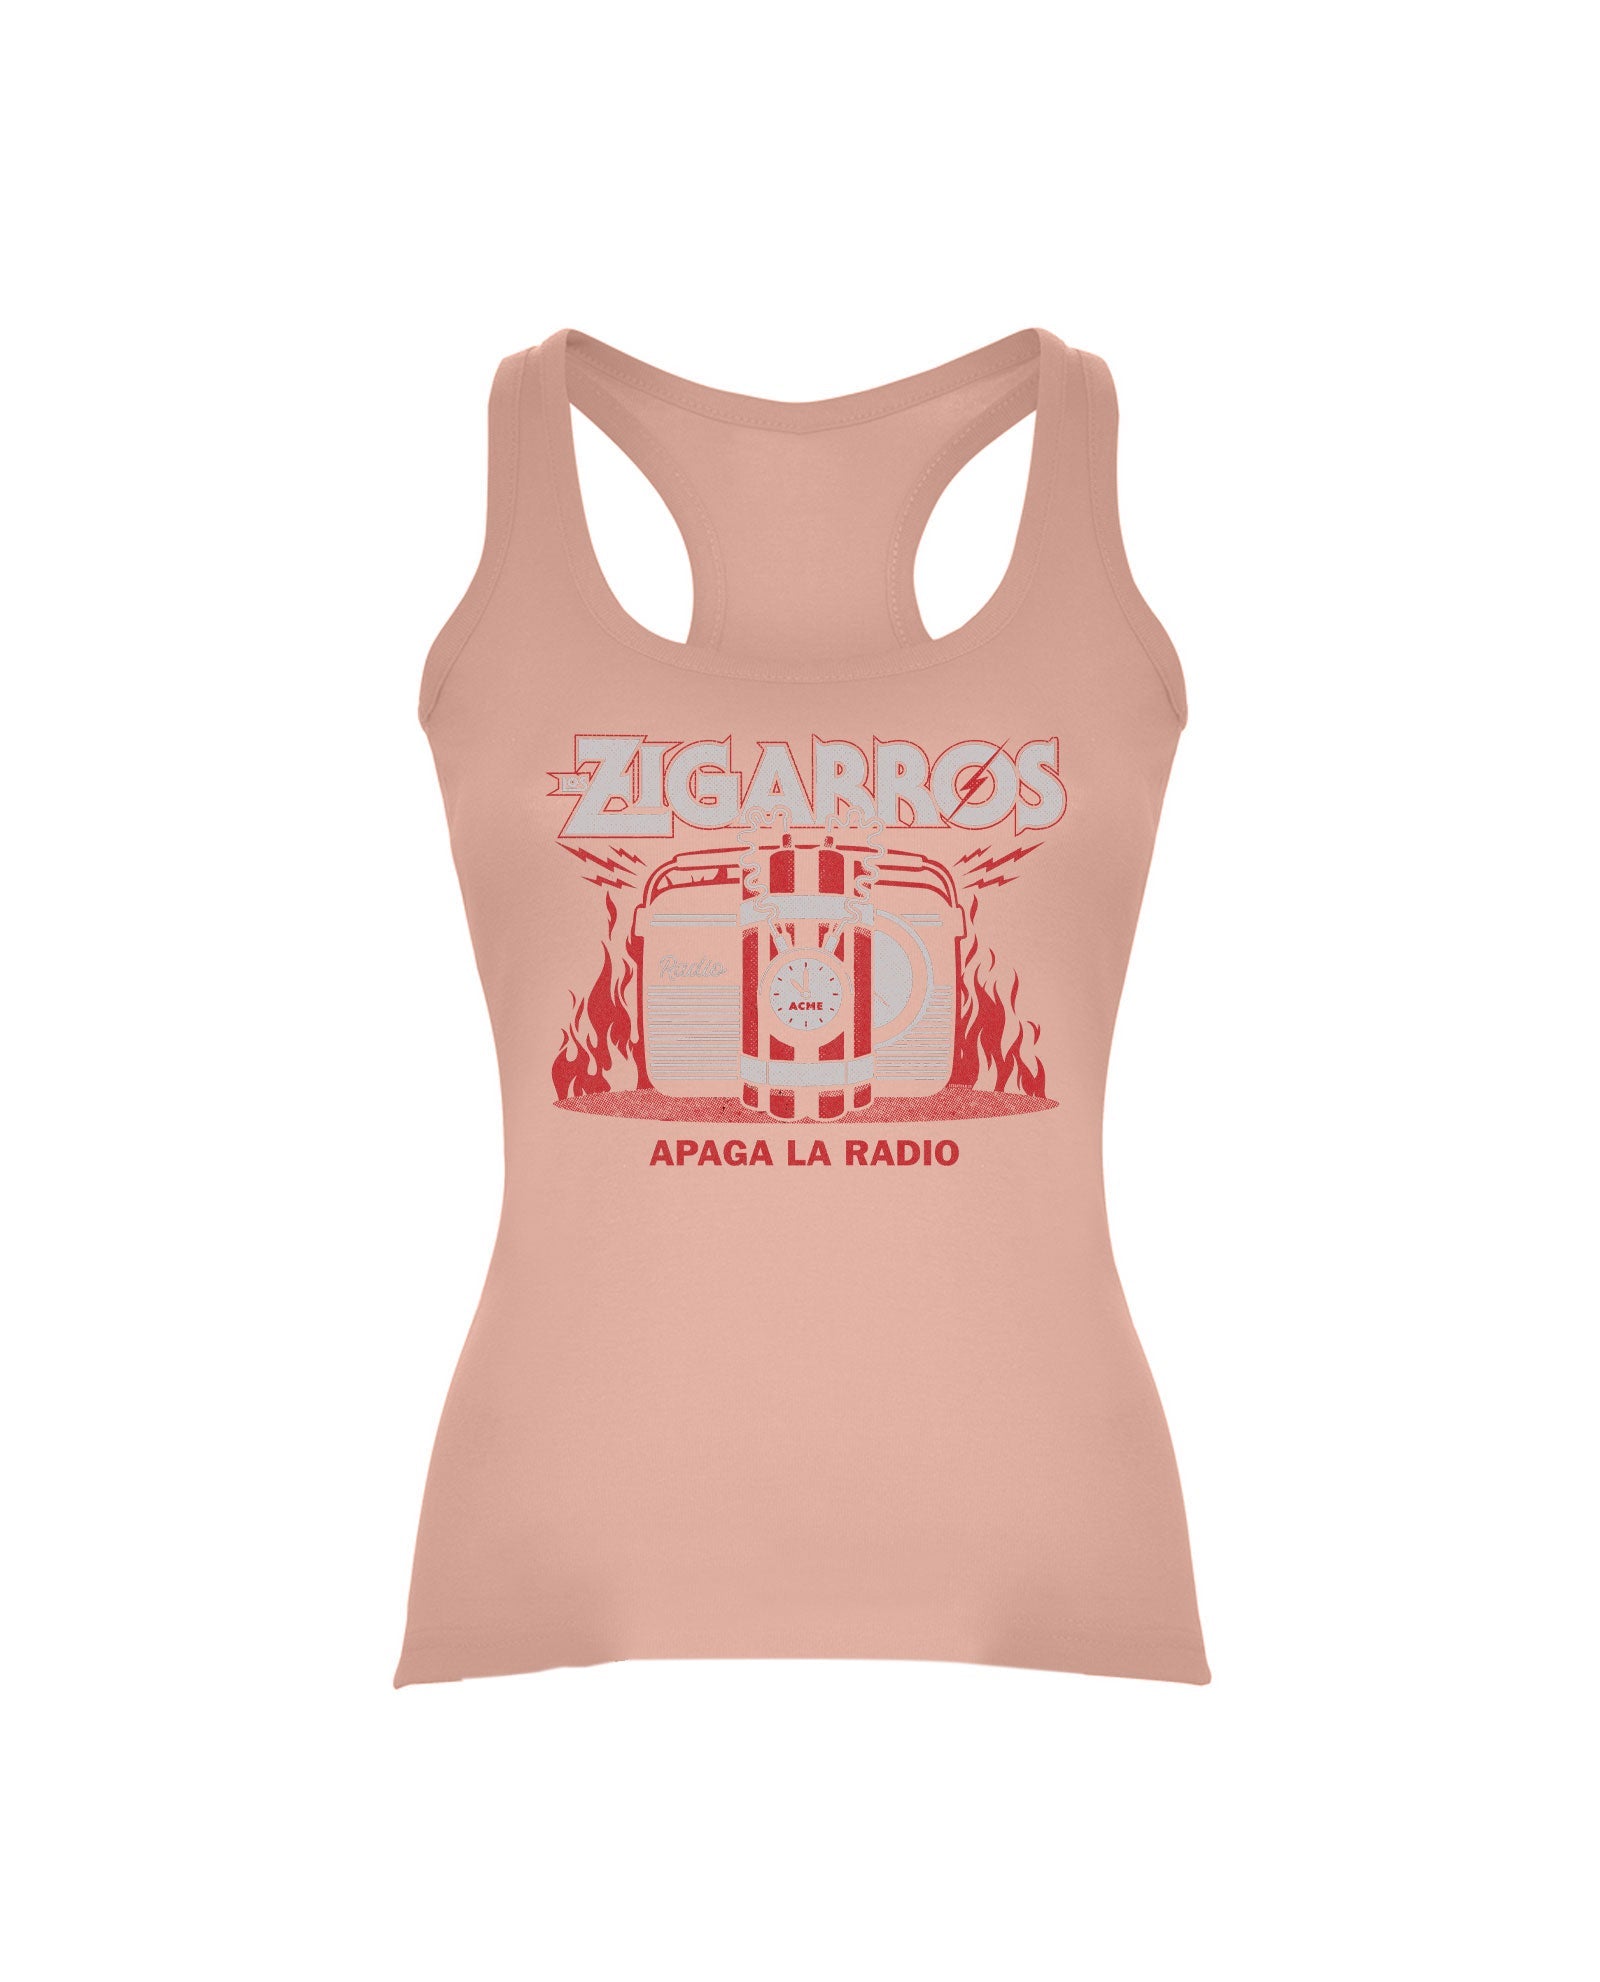 Camiseta Tirantes "Apaga La Radio" Mujer Salmón - Los Zigarros - Rocktud - Los Zigarros